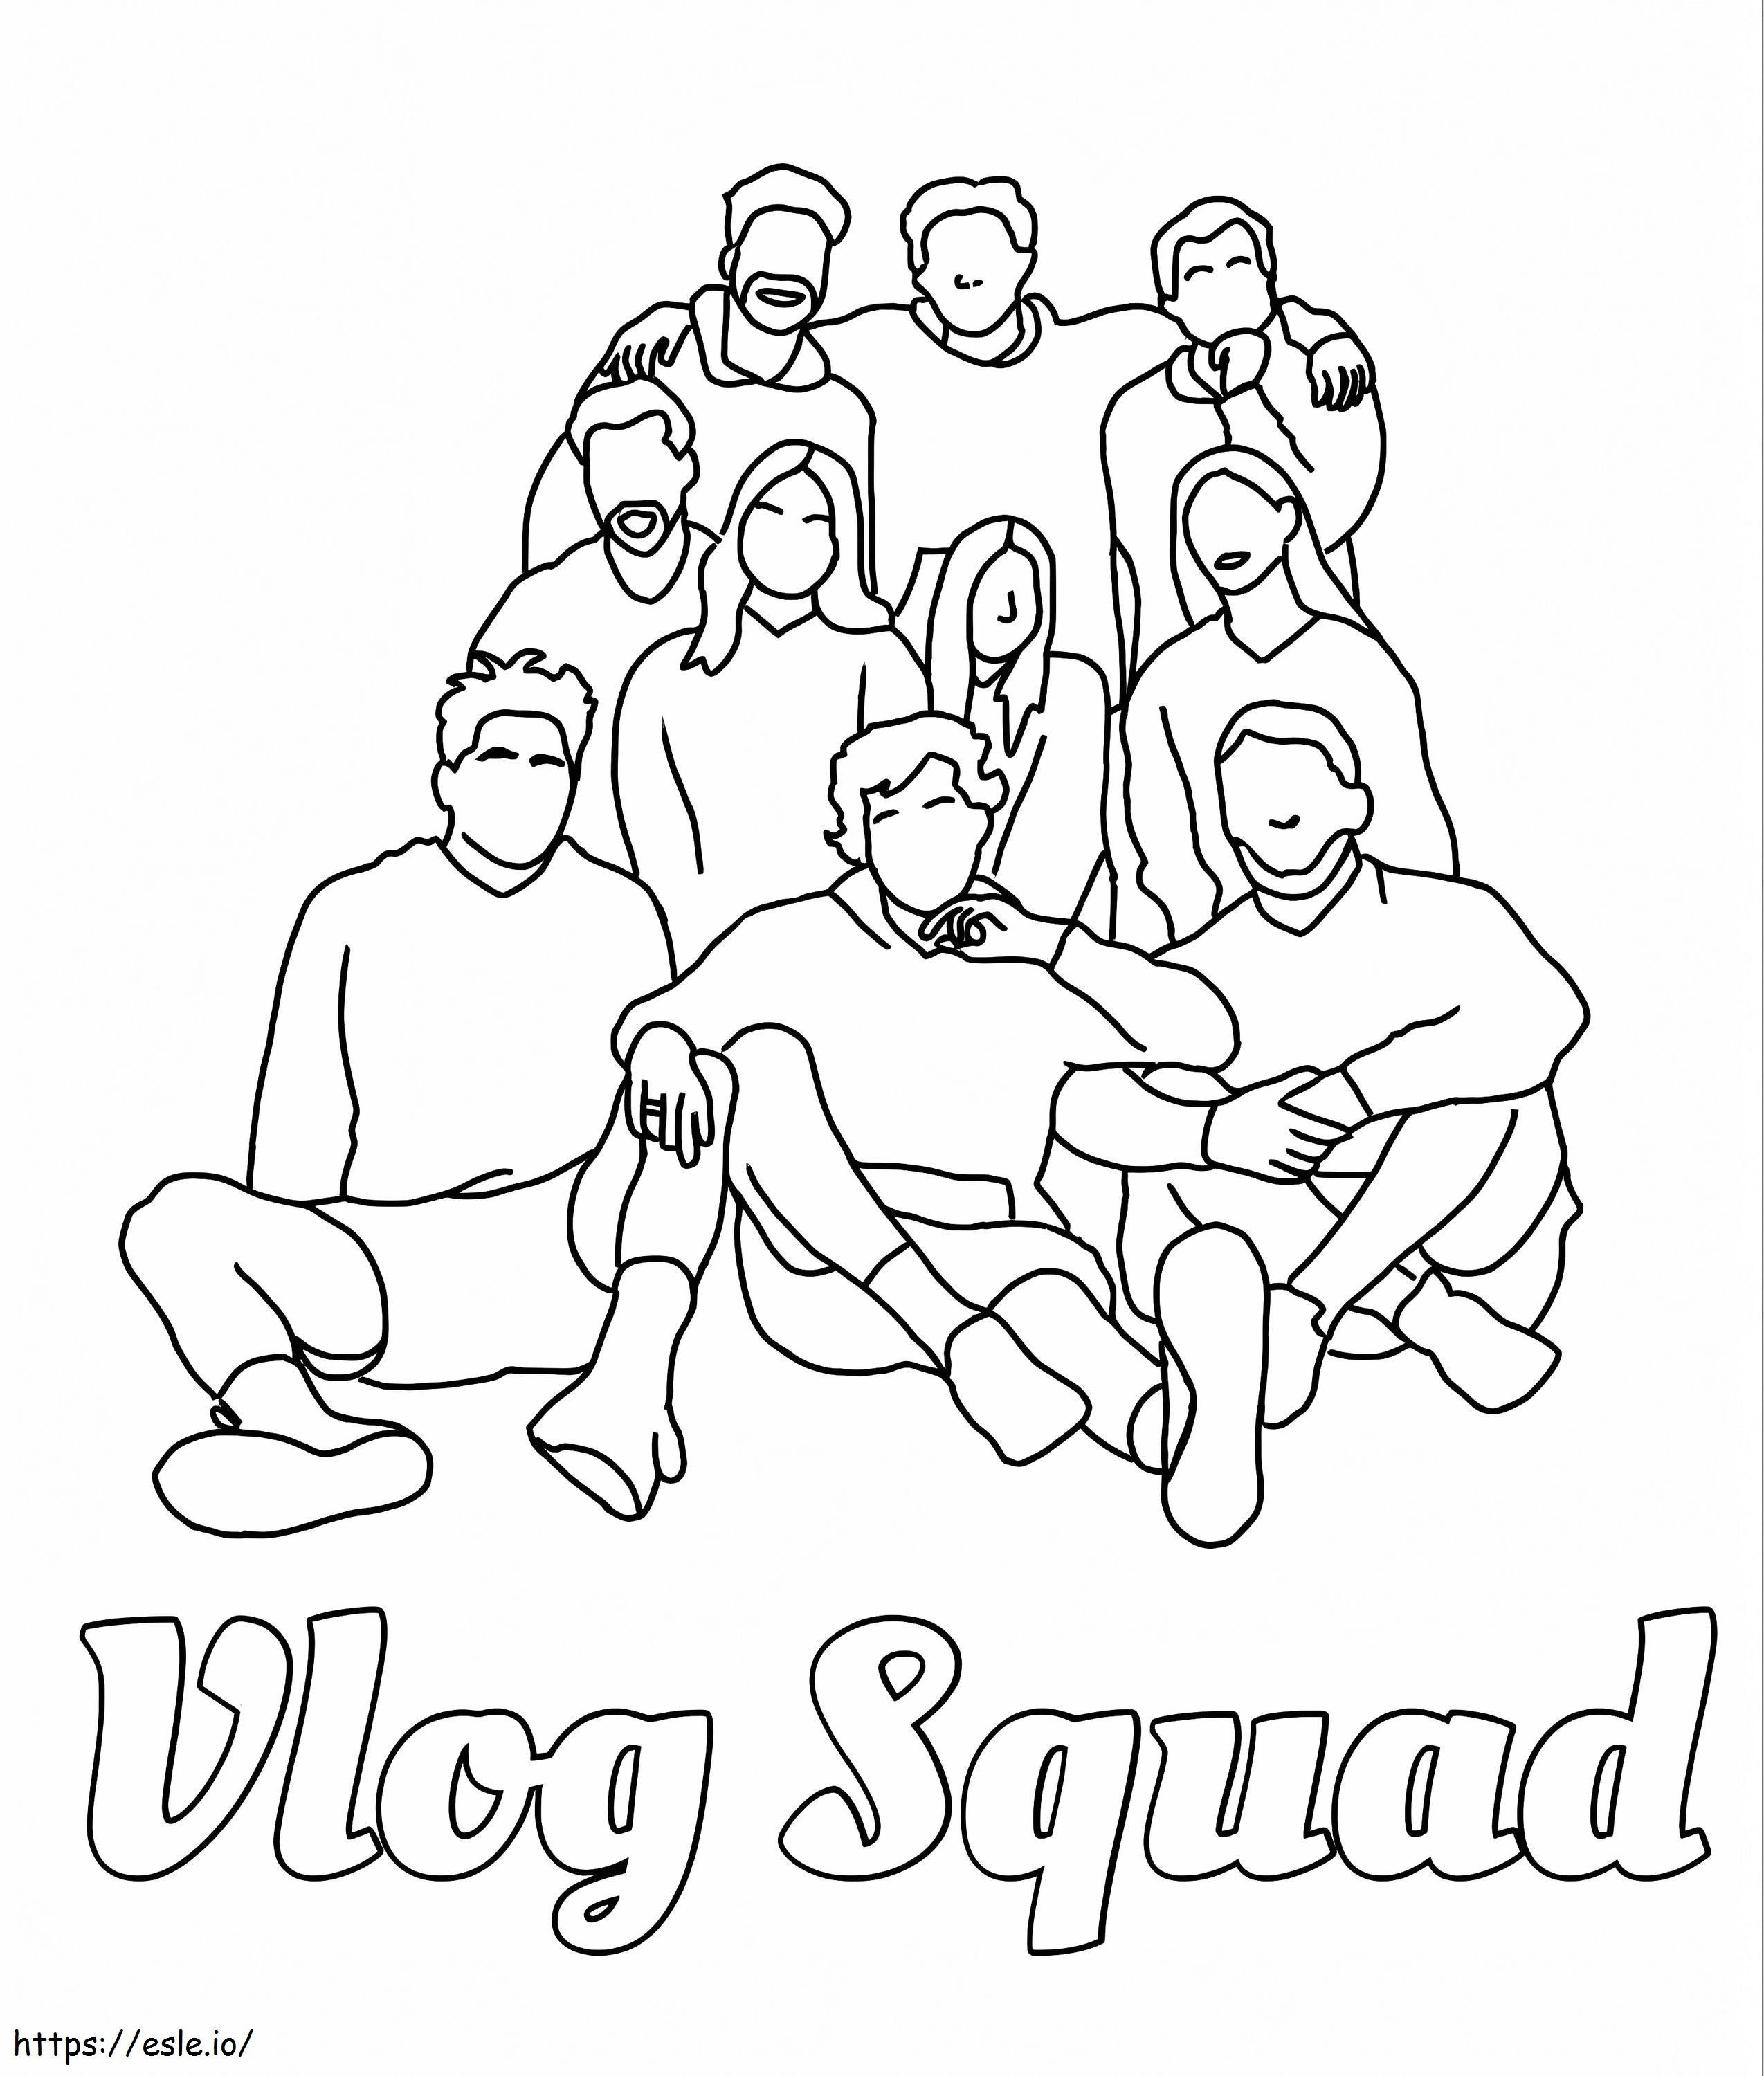 Esquadrão de Vlogs TikTok para colorir